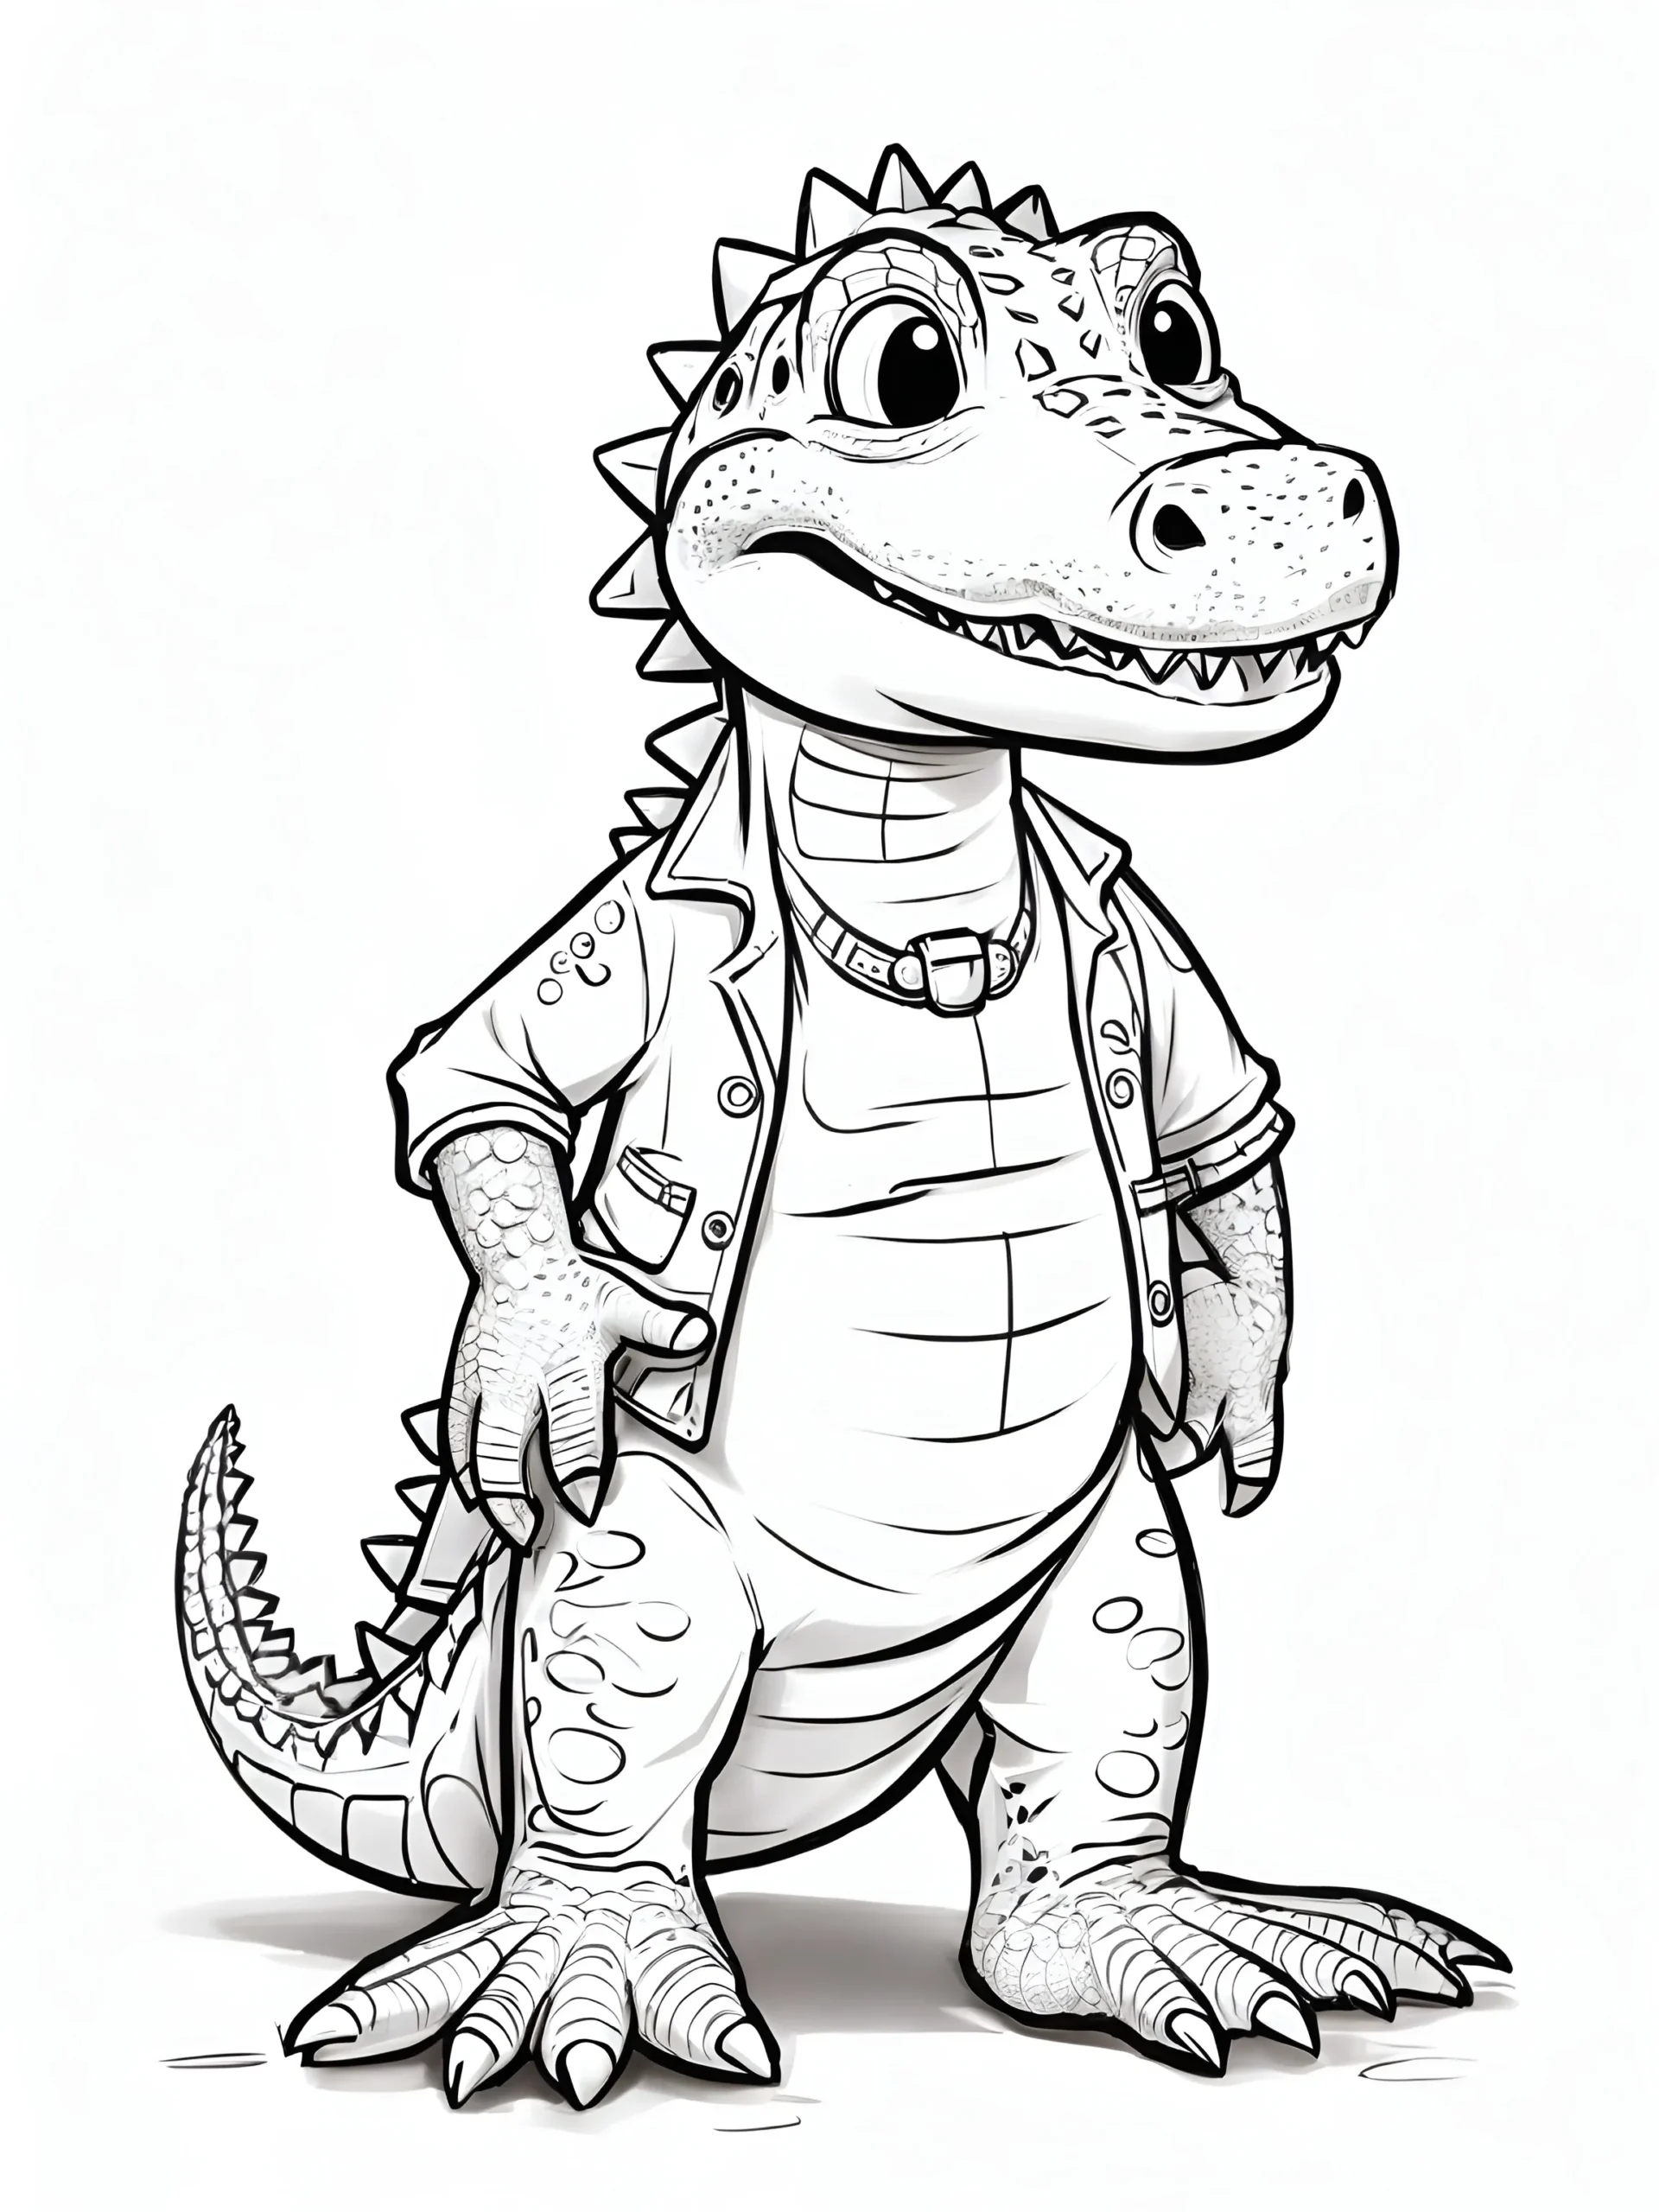 Crocodile coloring page prompt Leonardo AI